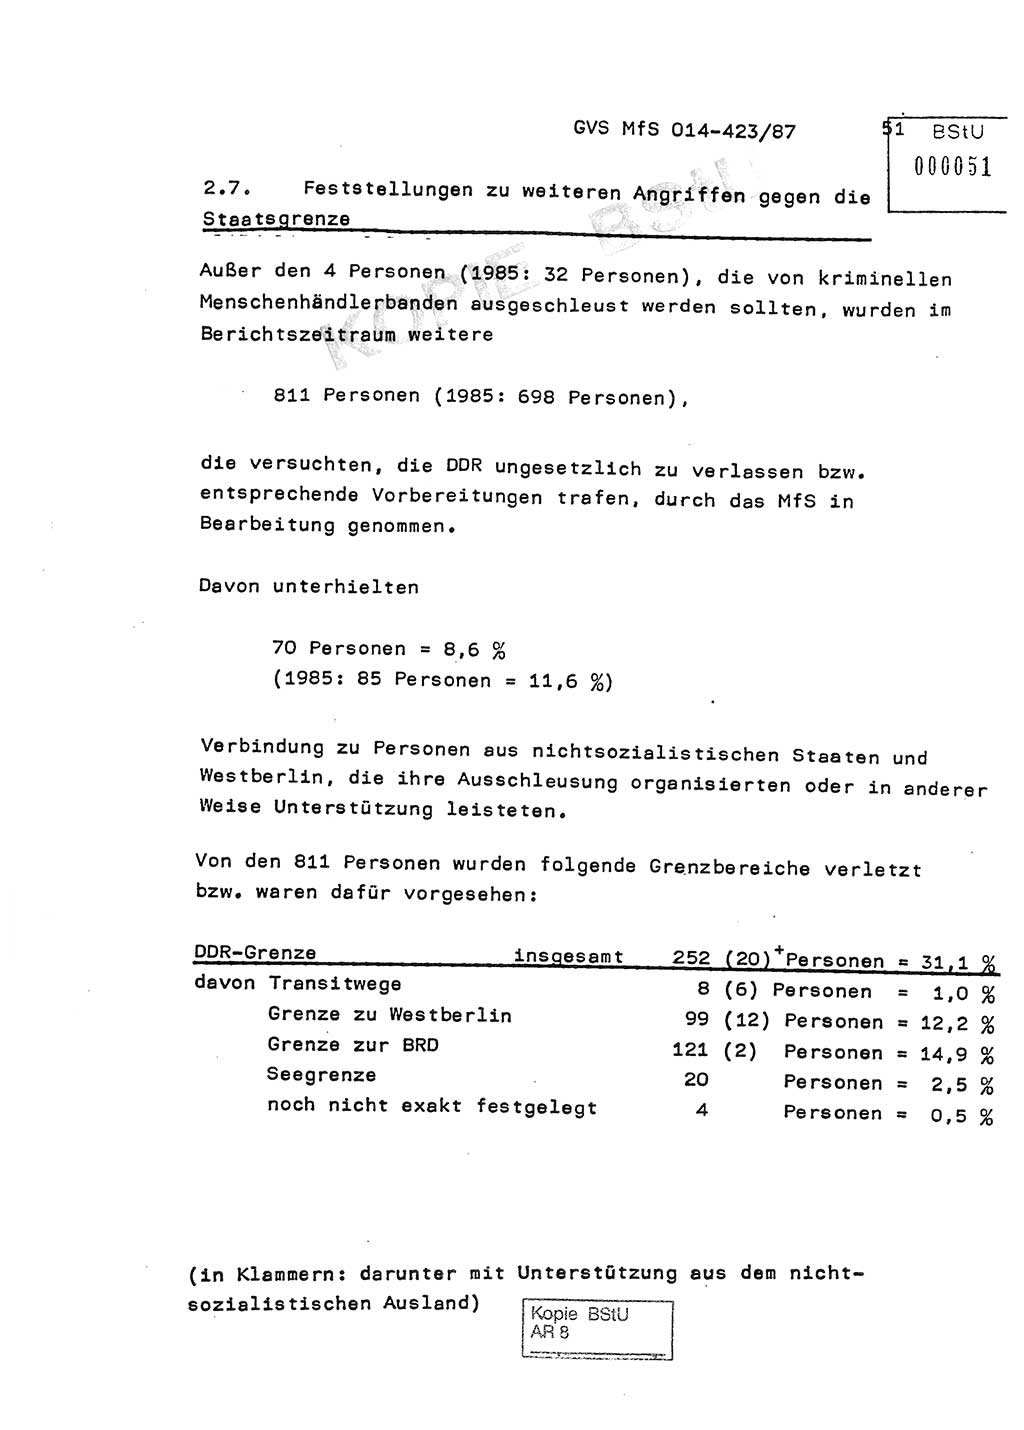 Jahresbericht der Hauptabteilung (HA) Ⅸ 1986, Einschätzung der Wirksamkeit der Untersuchungsarbeit im Jahre 1986, Ministerium für Staatssicherheit (MfS) der Deutschen Demokratischen Republik (DDR), Hauptabteilung Ⅸ, Geheime Verschlußsache (GVS) o014-423/87, Berlin 1987, Seite 51 (Einsch. MfS DDR HA Ⅸ GVS o014-423/87 1986, S. 51)